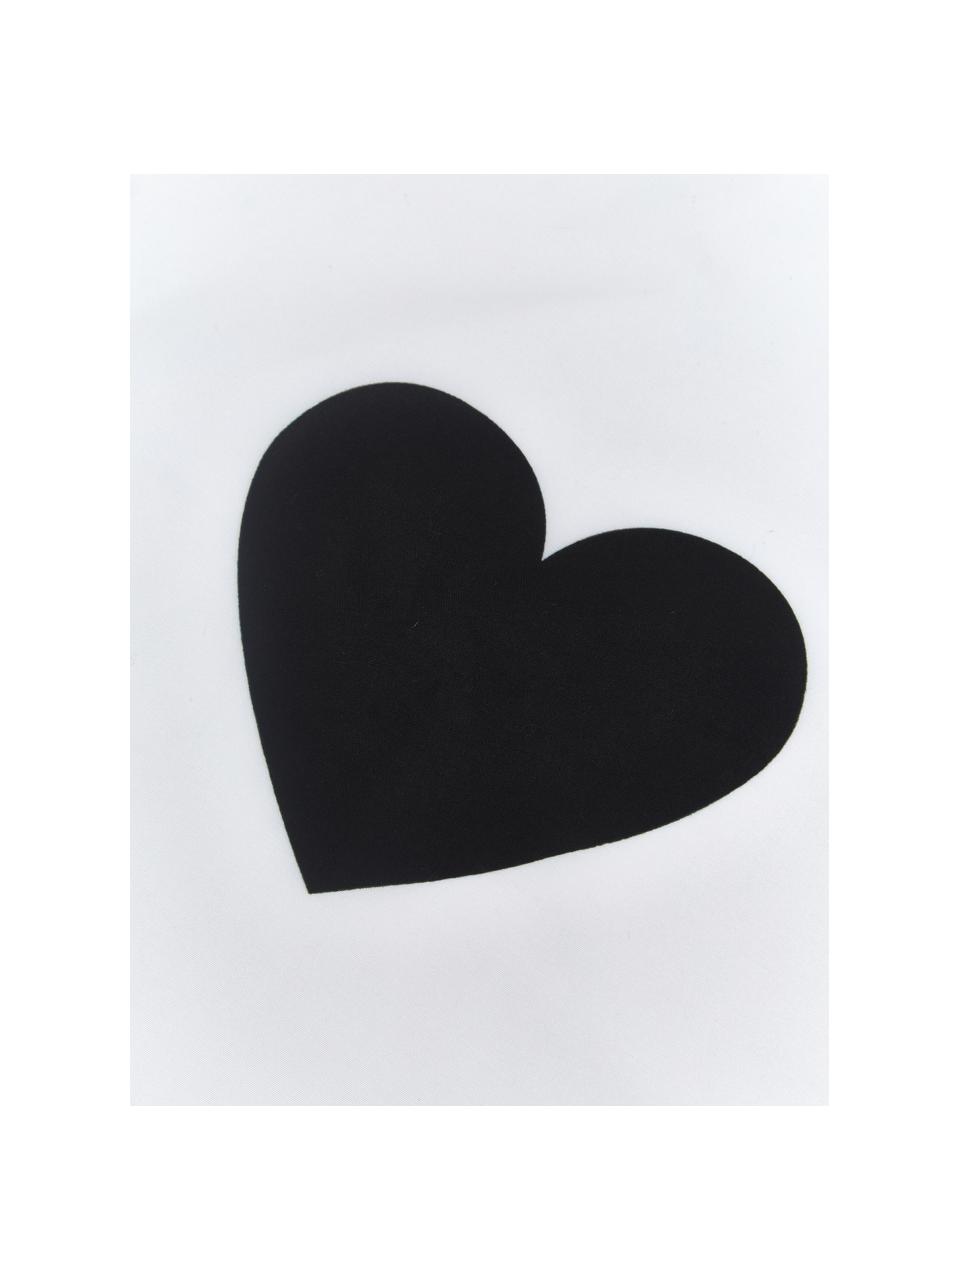 Kussenhoezen Love in zwart/wit, 2 stuks, 100% polyester, Zwart, wit, 40 x 40 cm